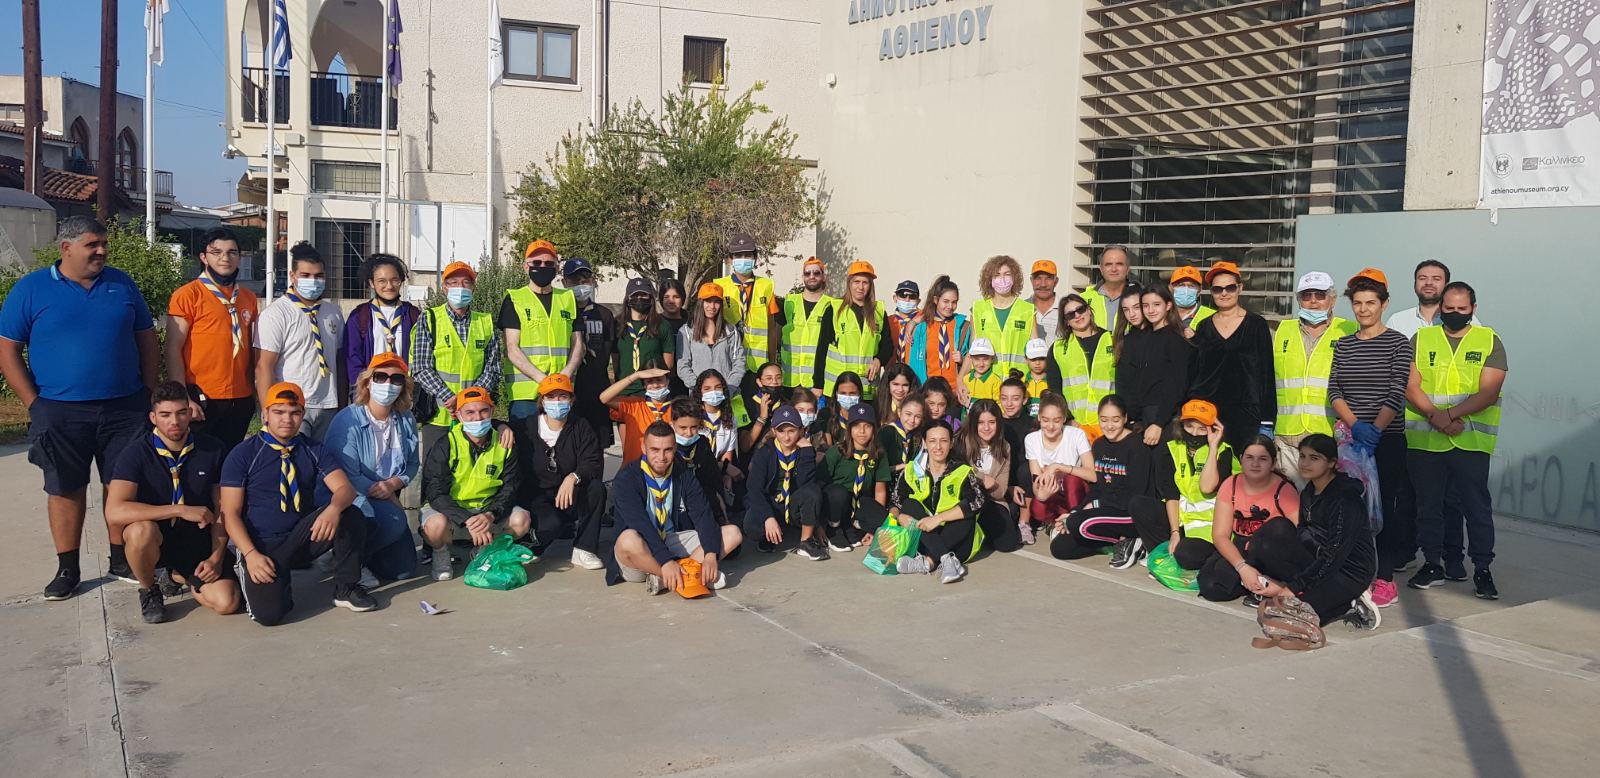 Πραγματοποιήθηκε η Παγκύπρια Εκστρατεία Καθαρισμού στην Αθηένου